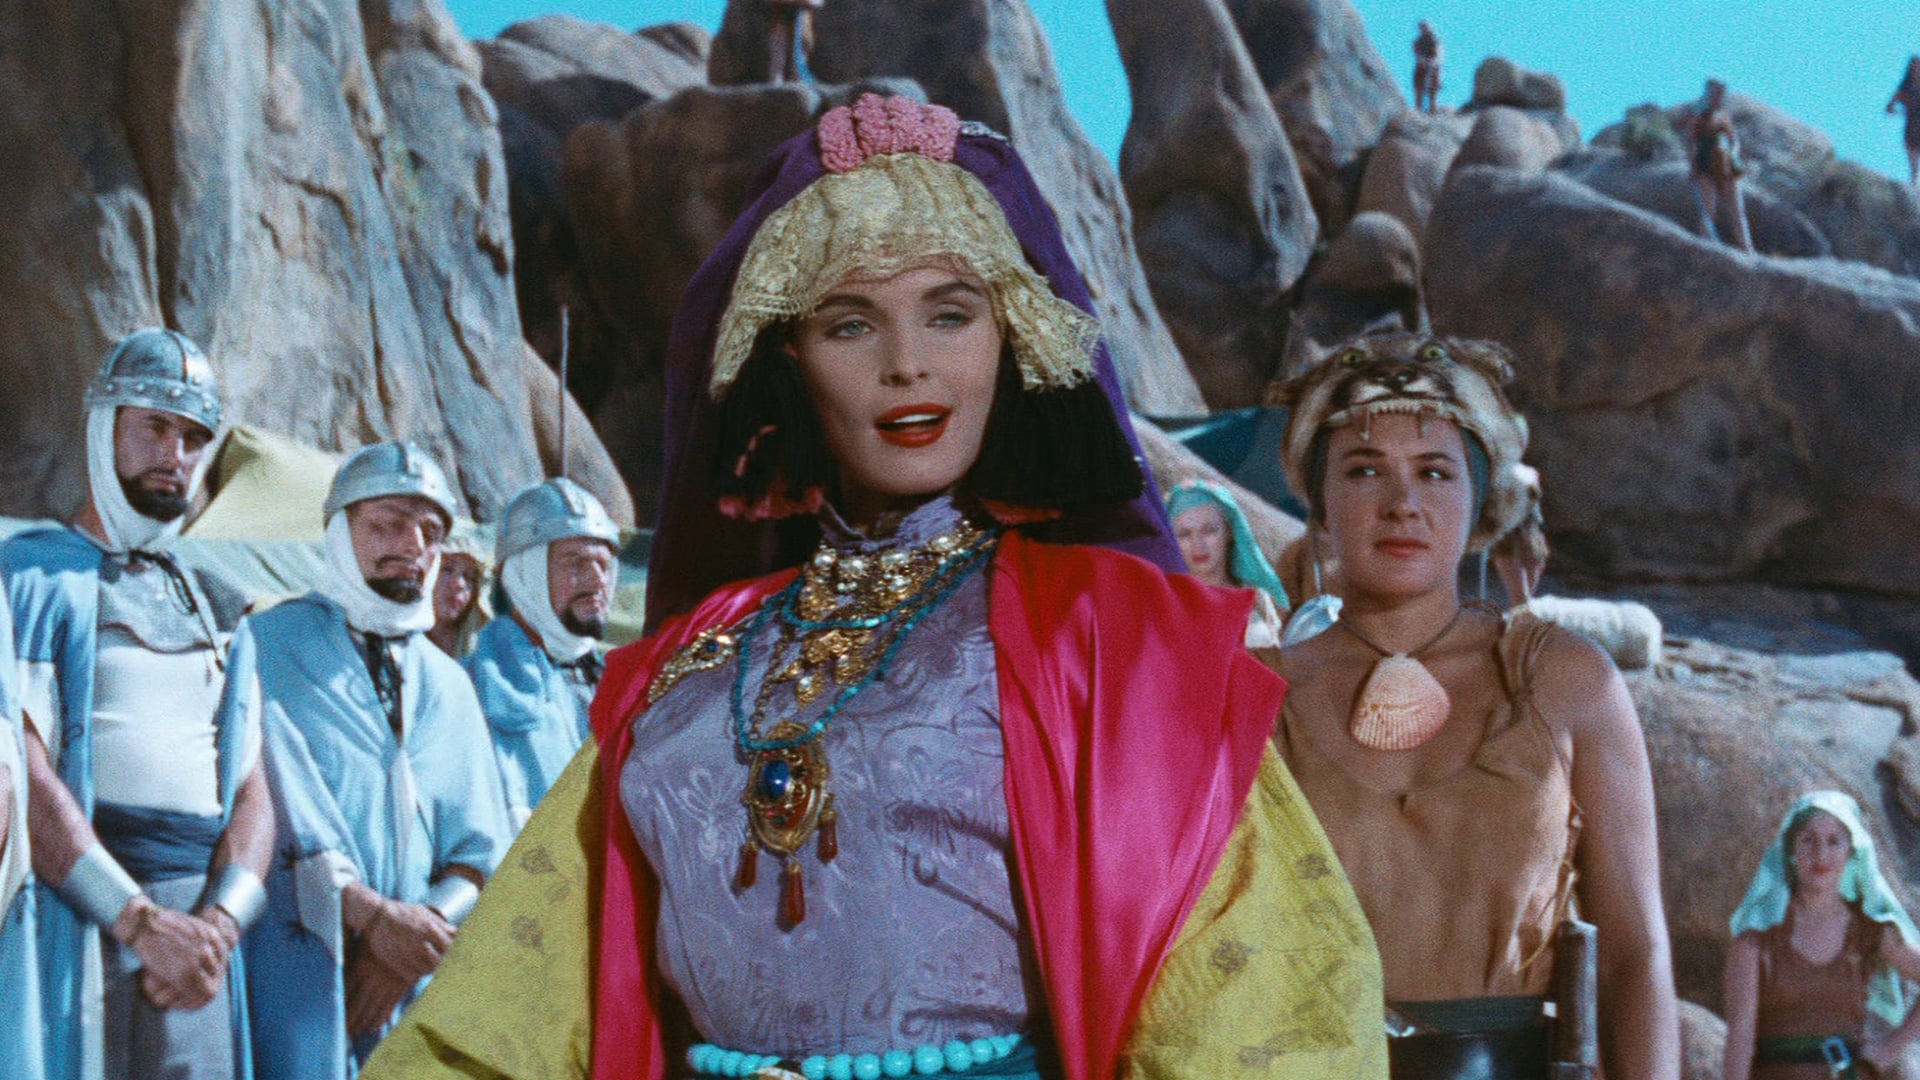 The Adventures of Hajji Baba (1954)